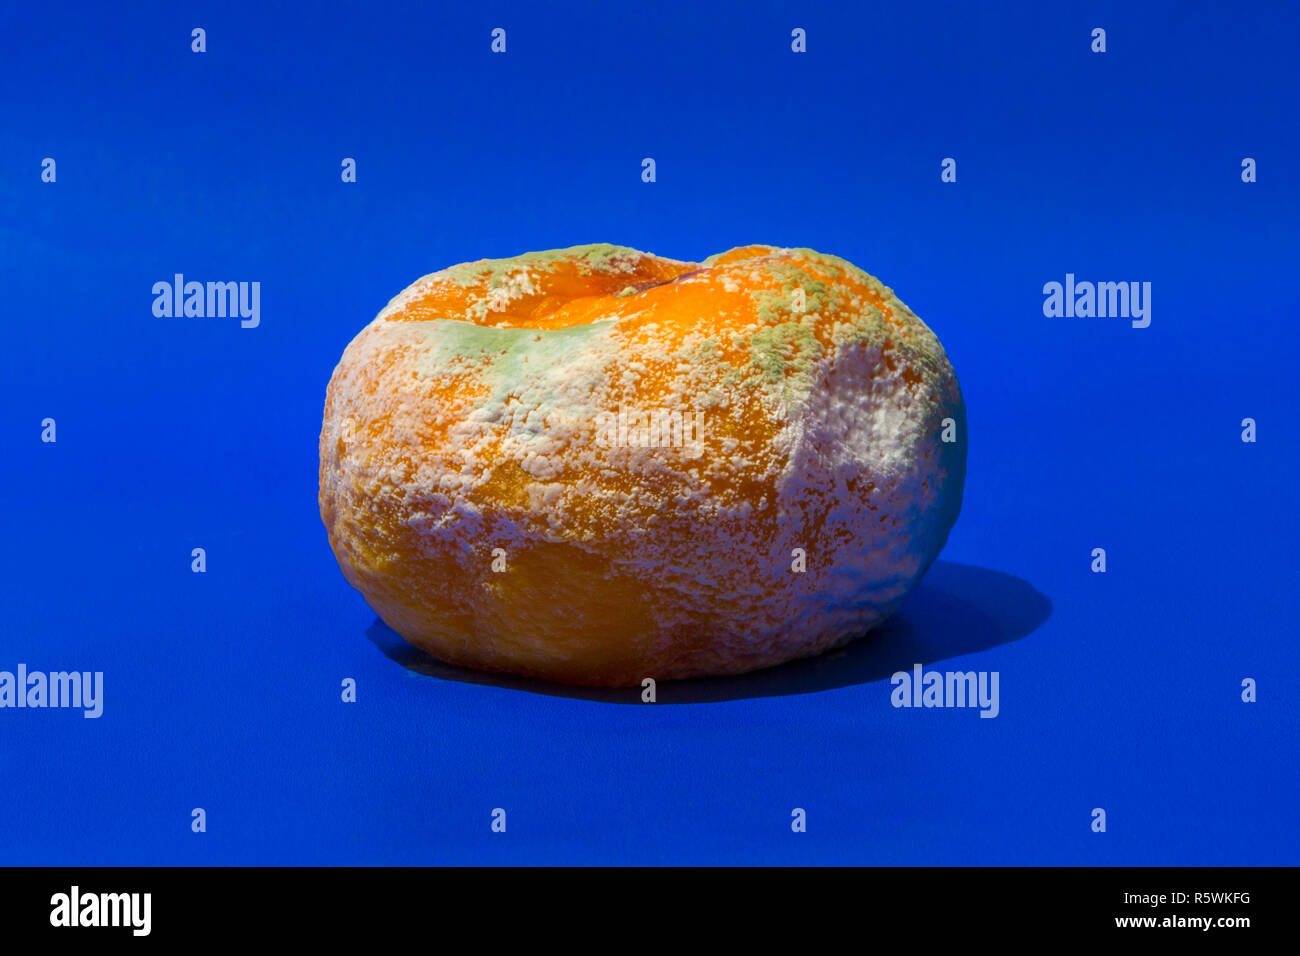 Les fruits pourris, moisis - une orange. Banque D'Images